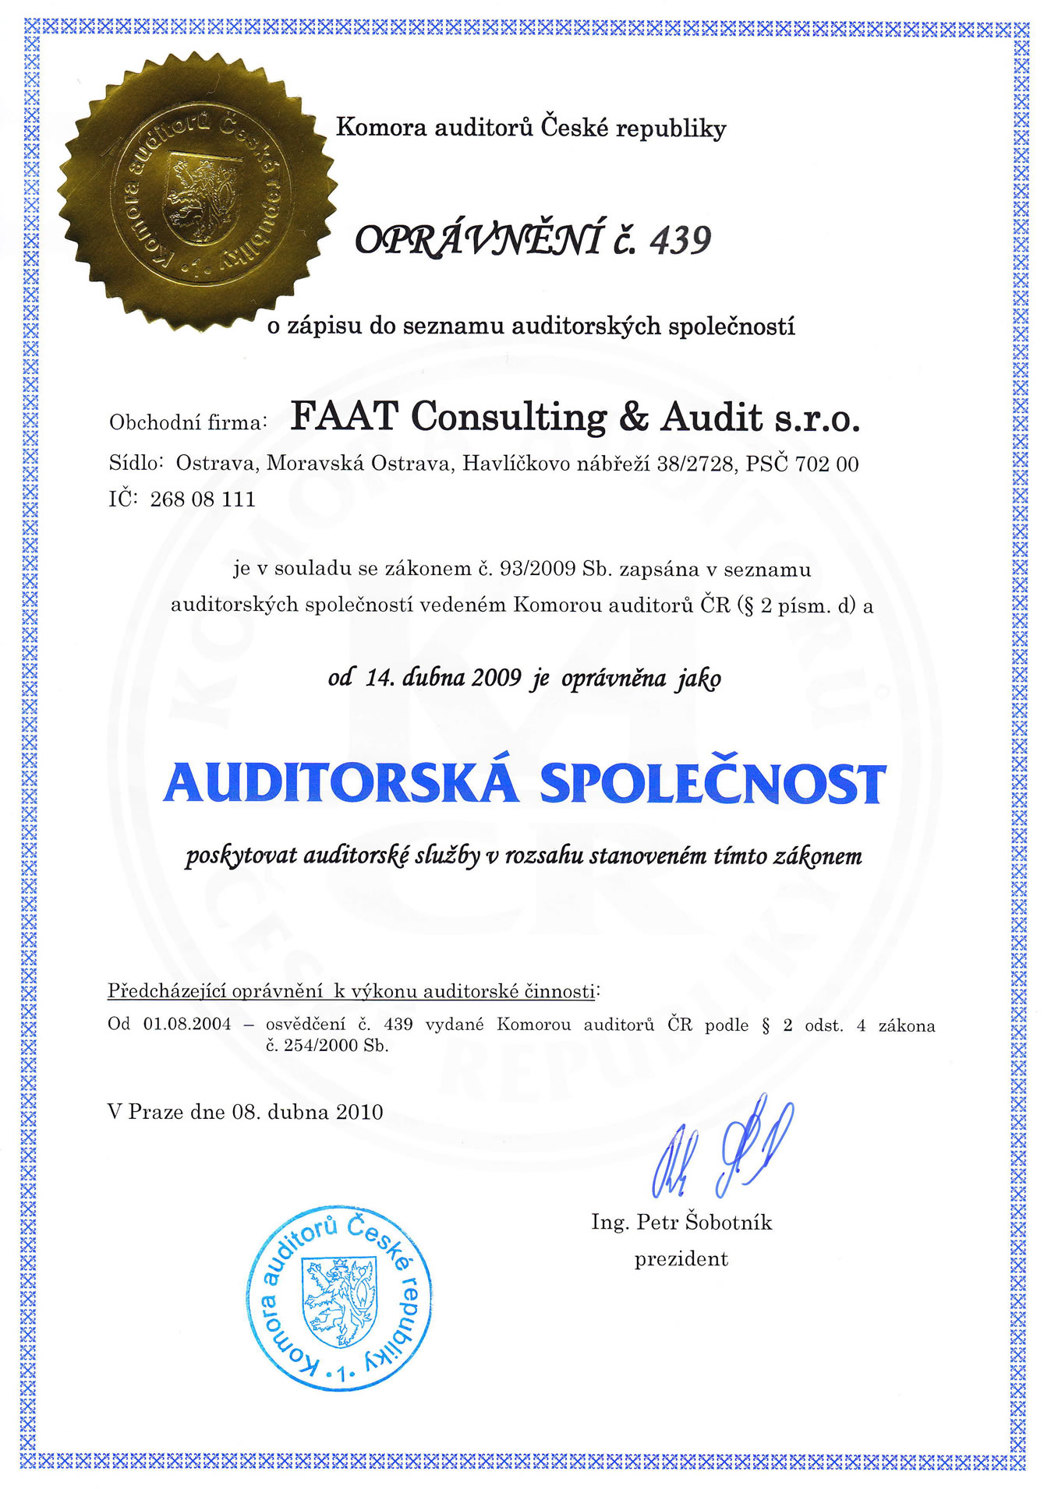 FAAT Consulting & Audit s.r.o. je oprávněna AUDITORSKÁ SPOLEČNOST poskytovat auditorské služby.